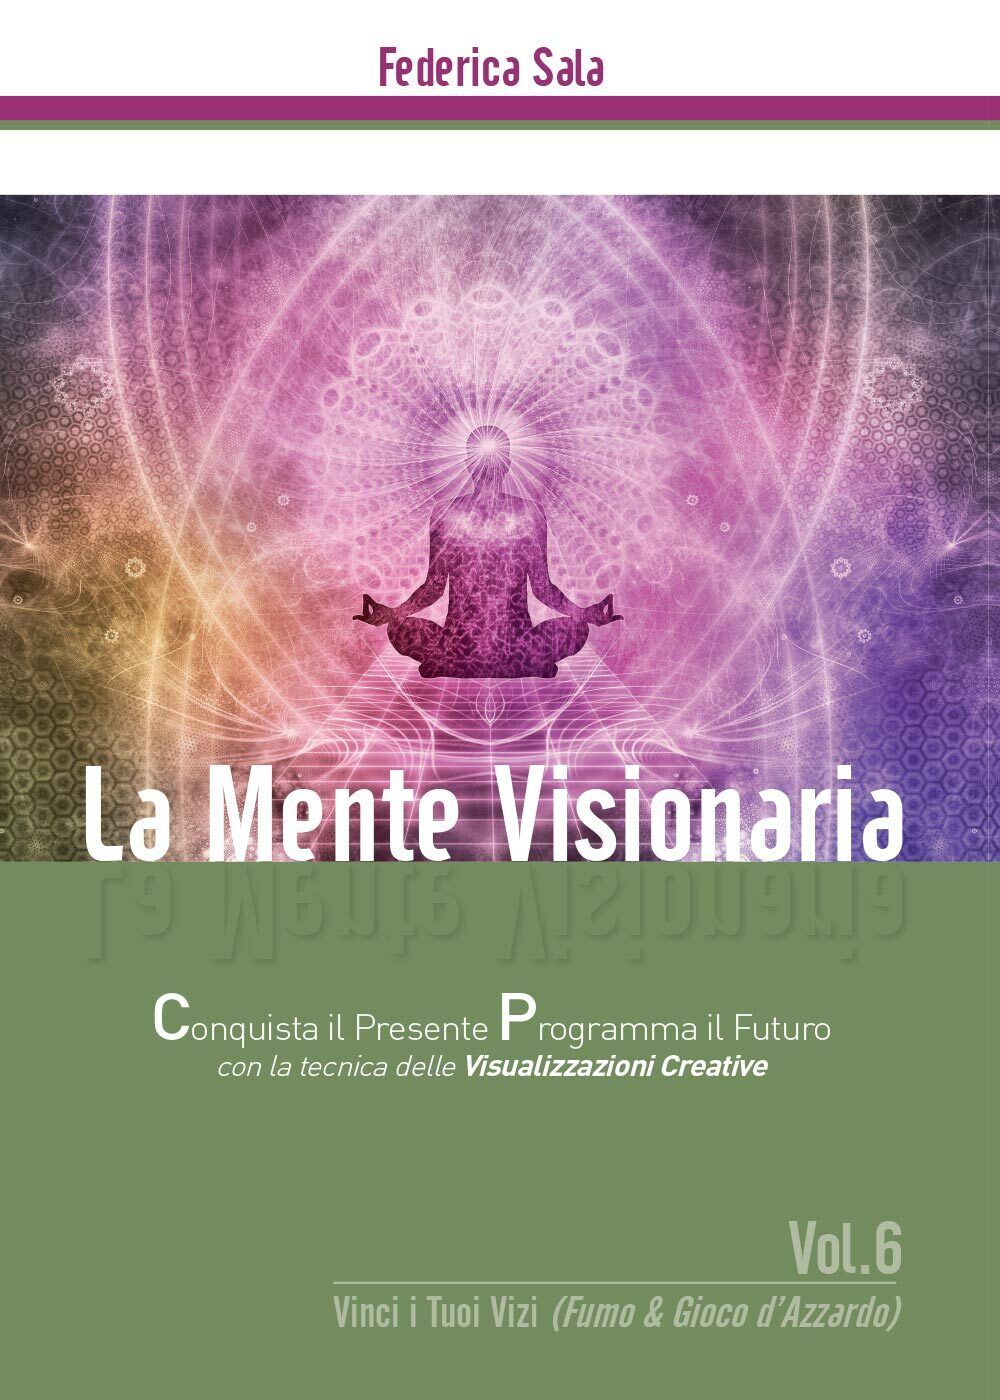 La Mente Visionaria Vol.6 Vinci i Tuoi vizi (Fumo & Gioco d'azzardo) libro usato